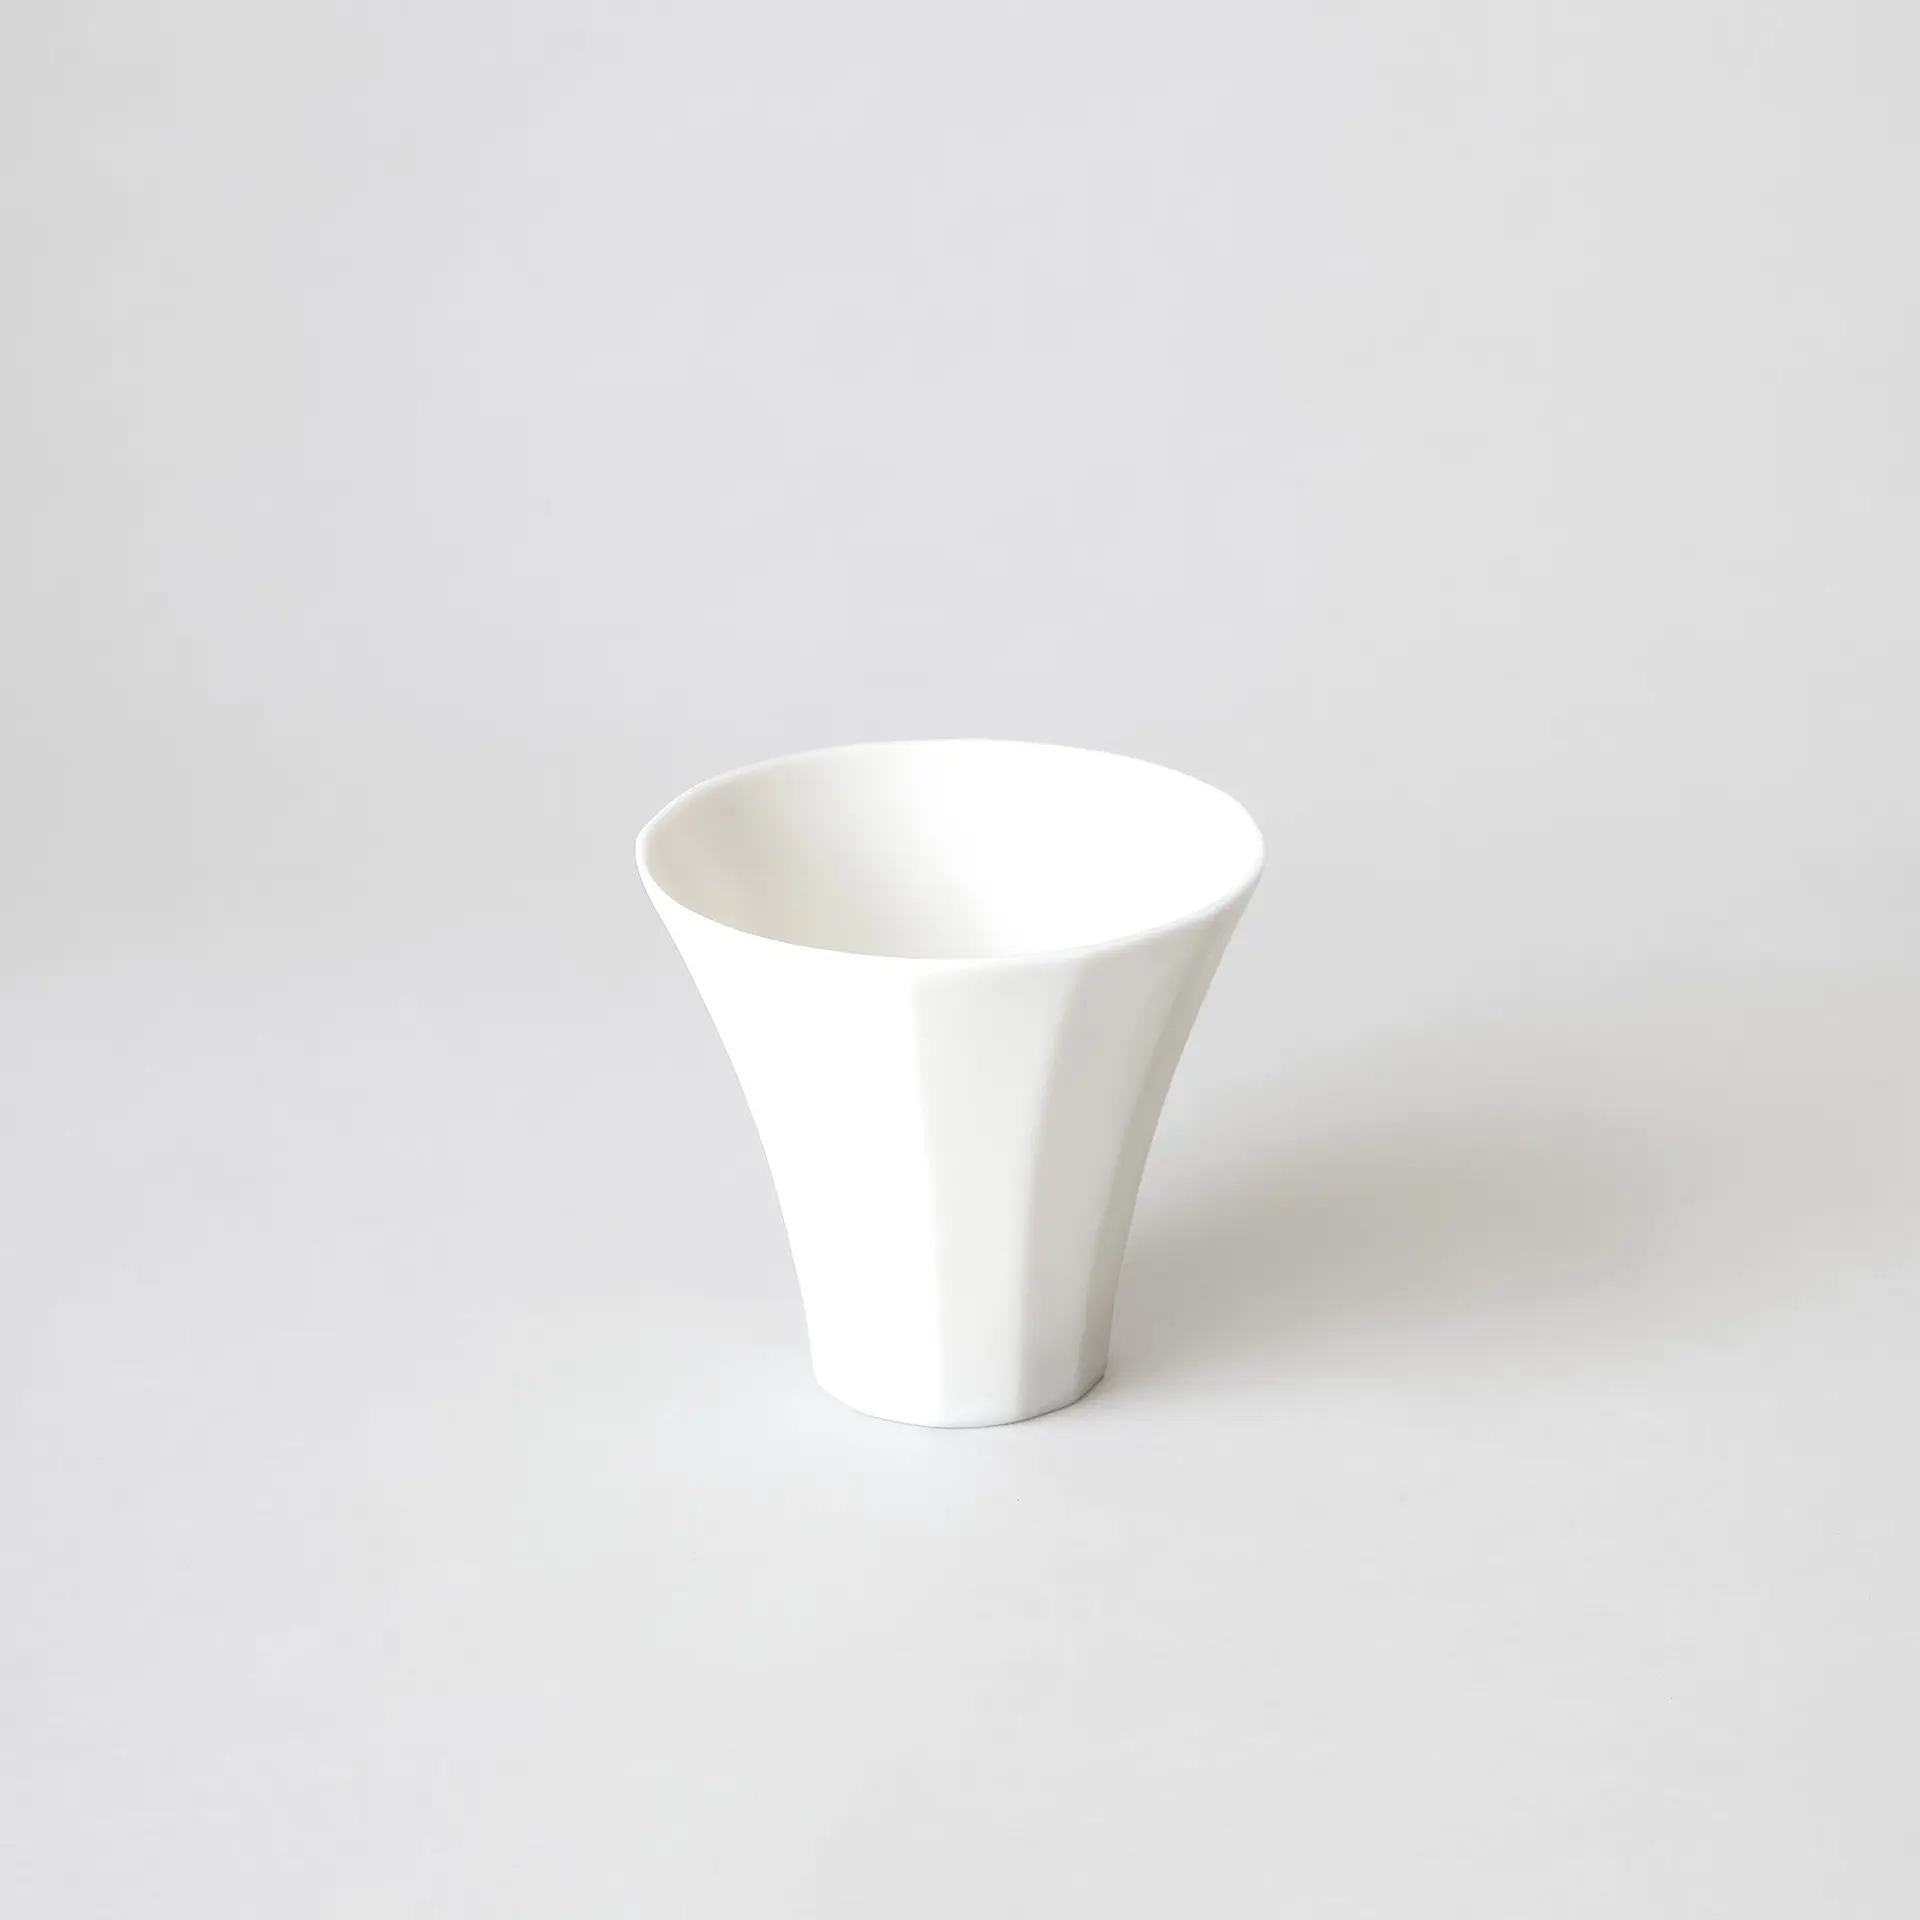 White porcelain Sake cup